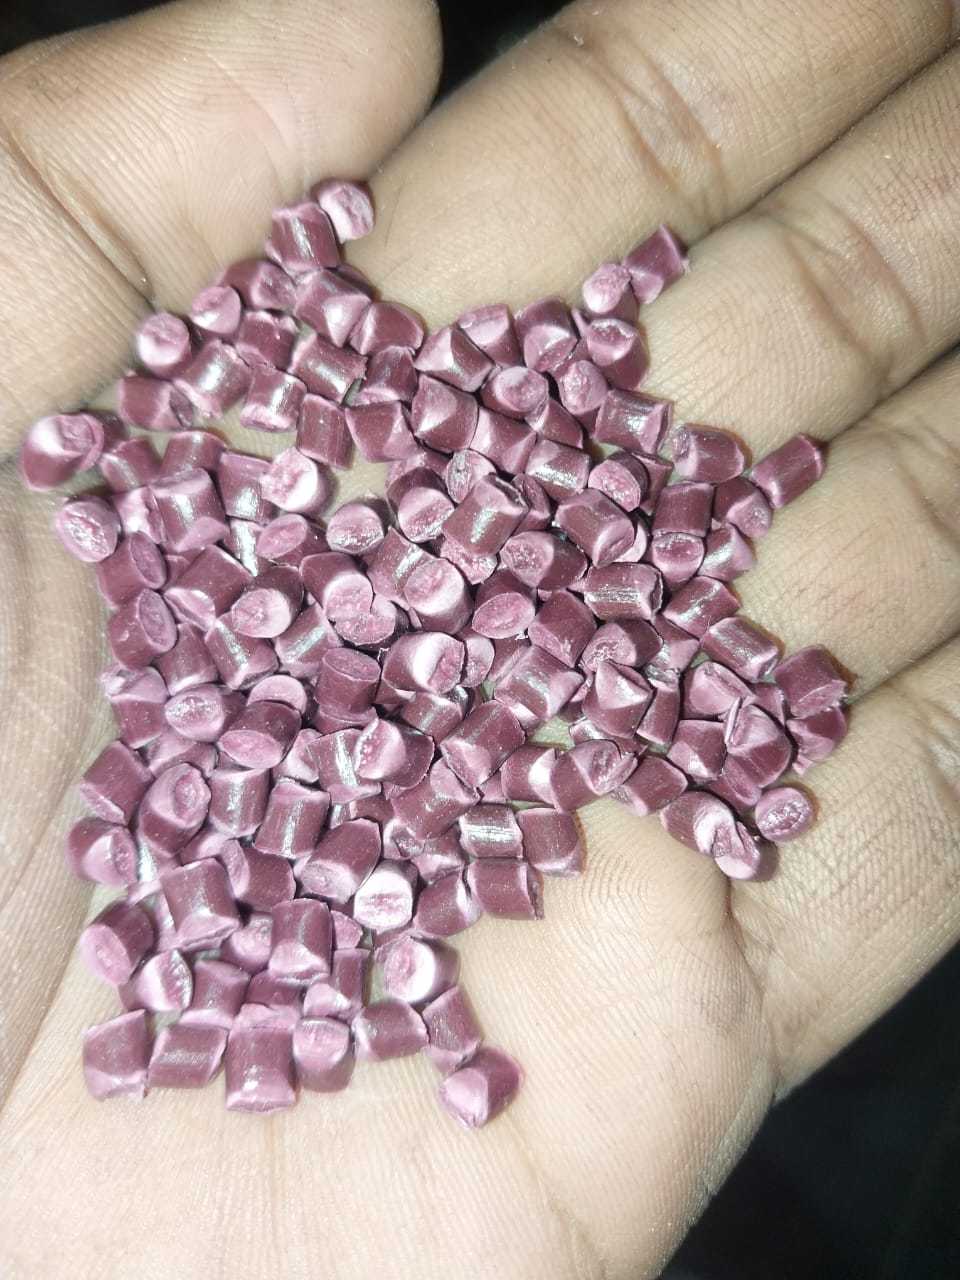 REPROCESS BOPP GRANUALS BOPP Reprocess Granule Film Grade salepur kotla uttar pradesh india Plastic4trade